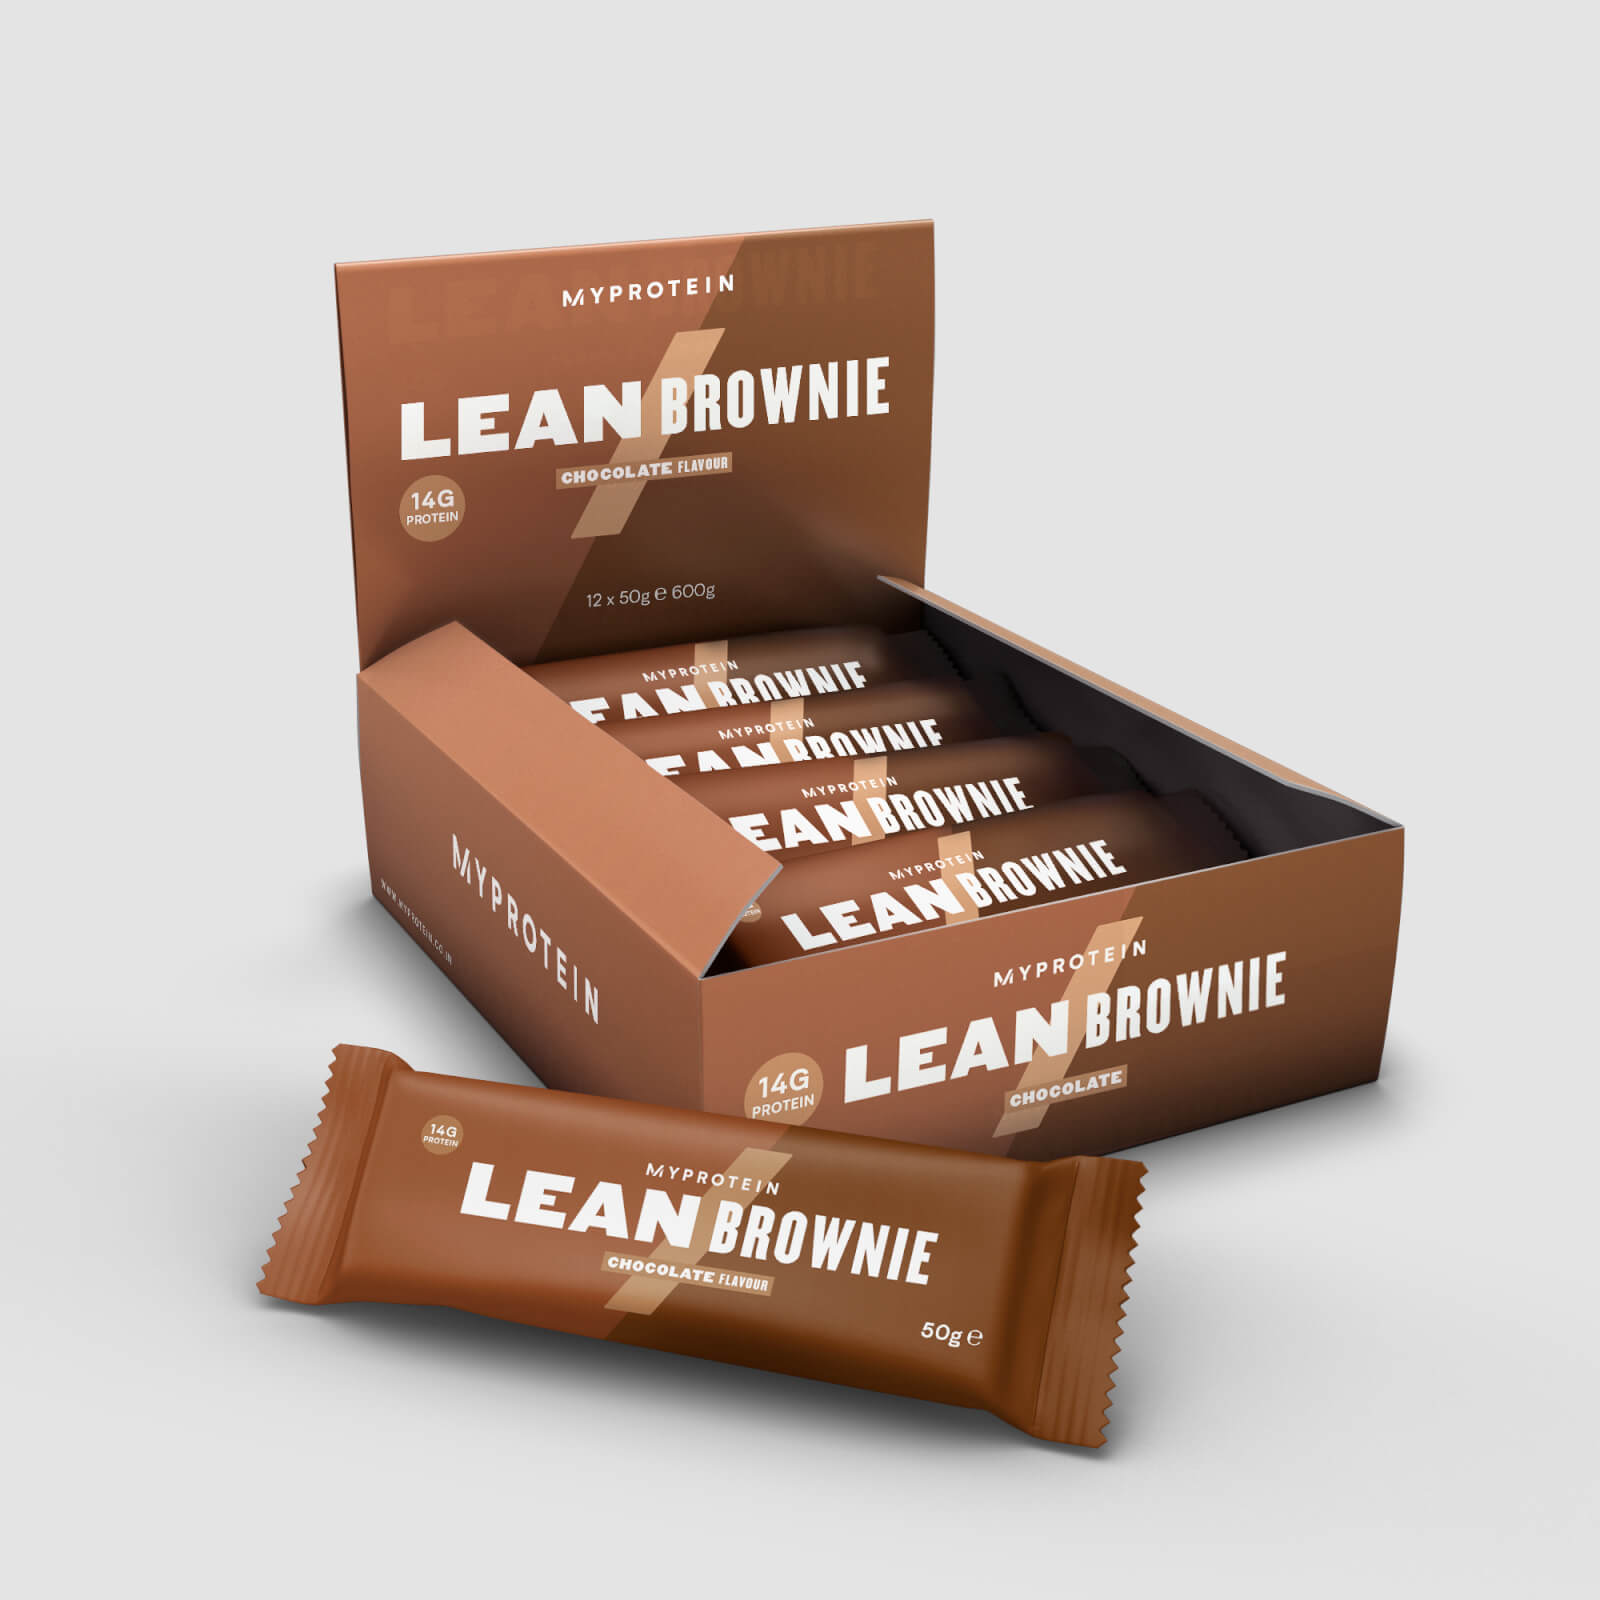 Myprotein Lean Brownie - 12 x 50g - Chocolate